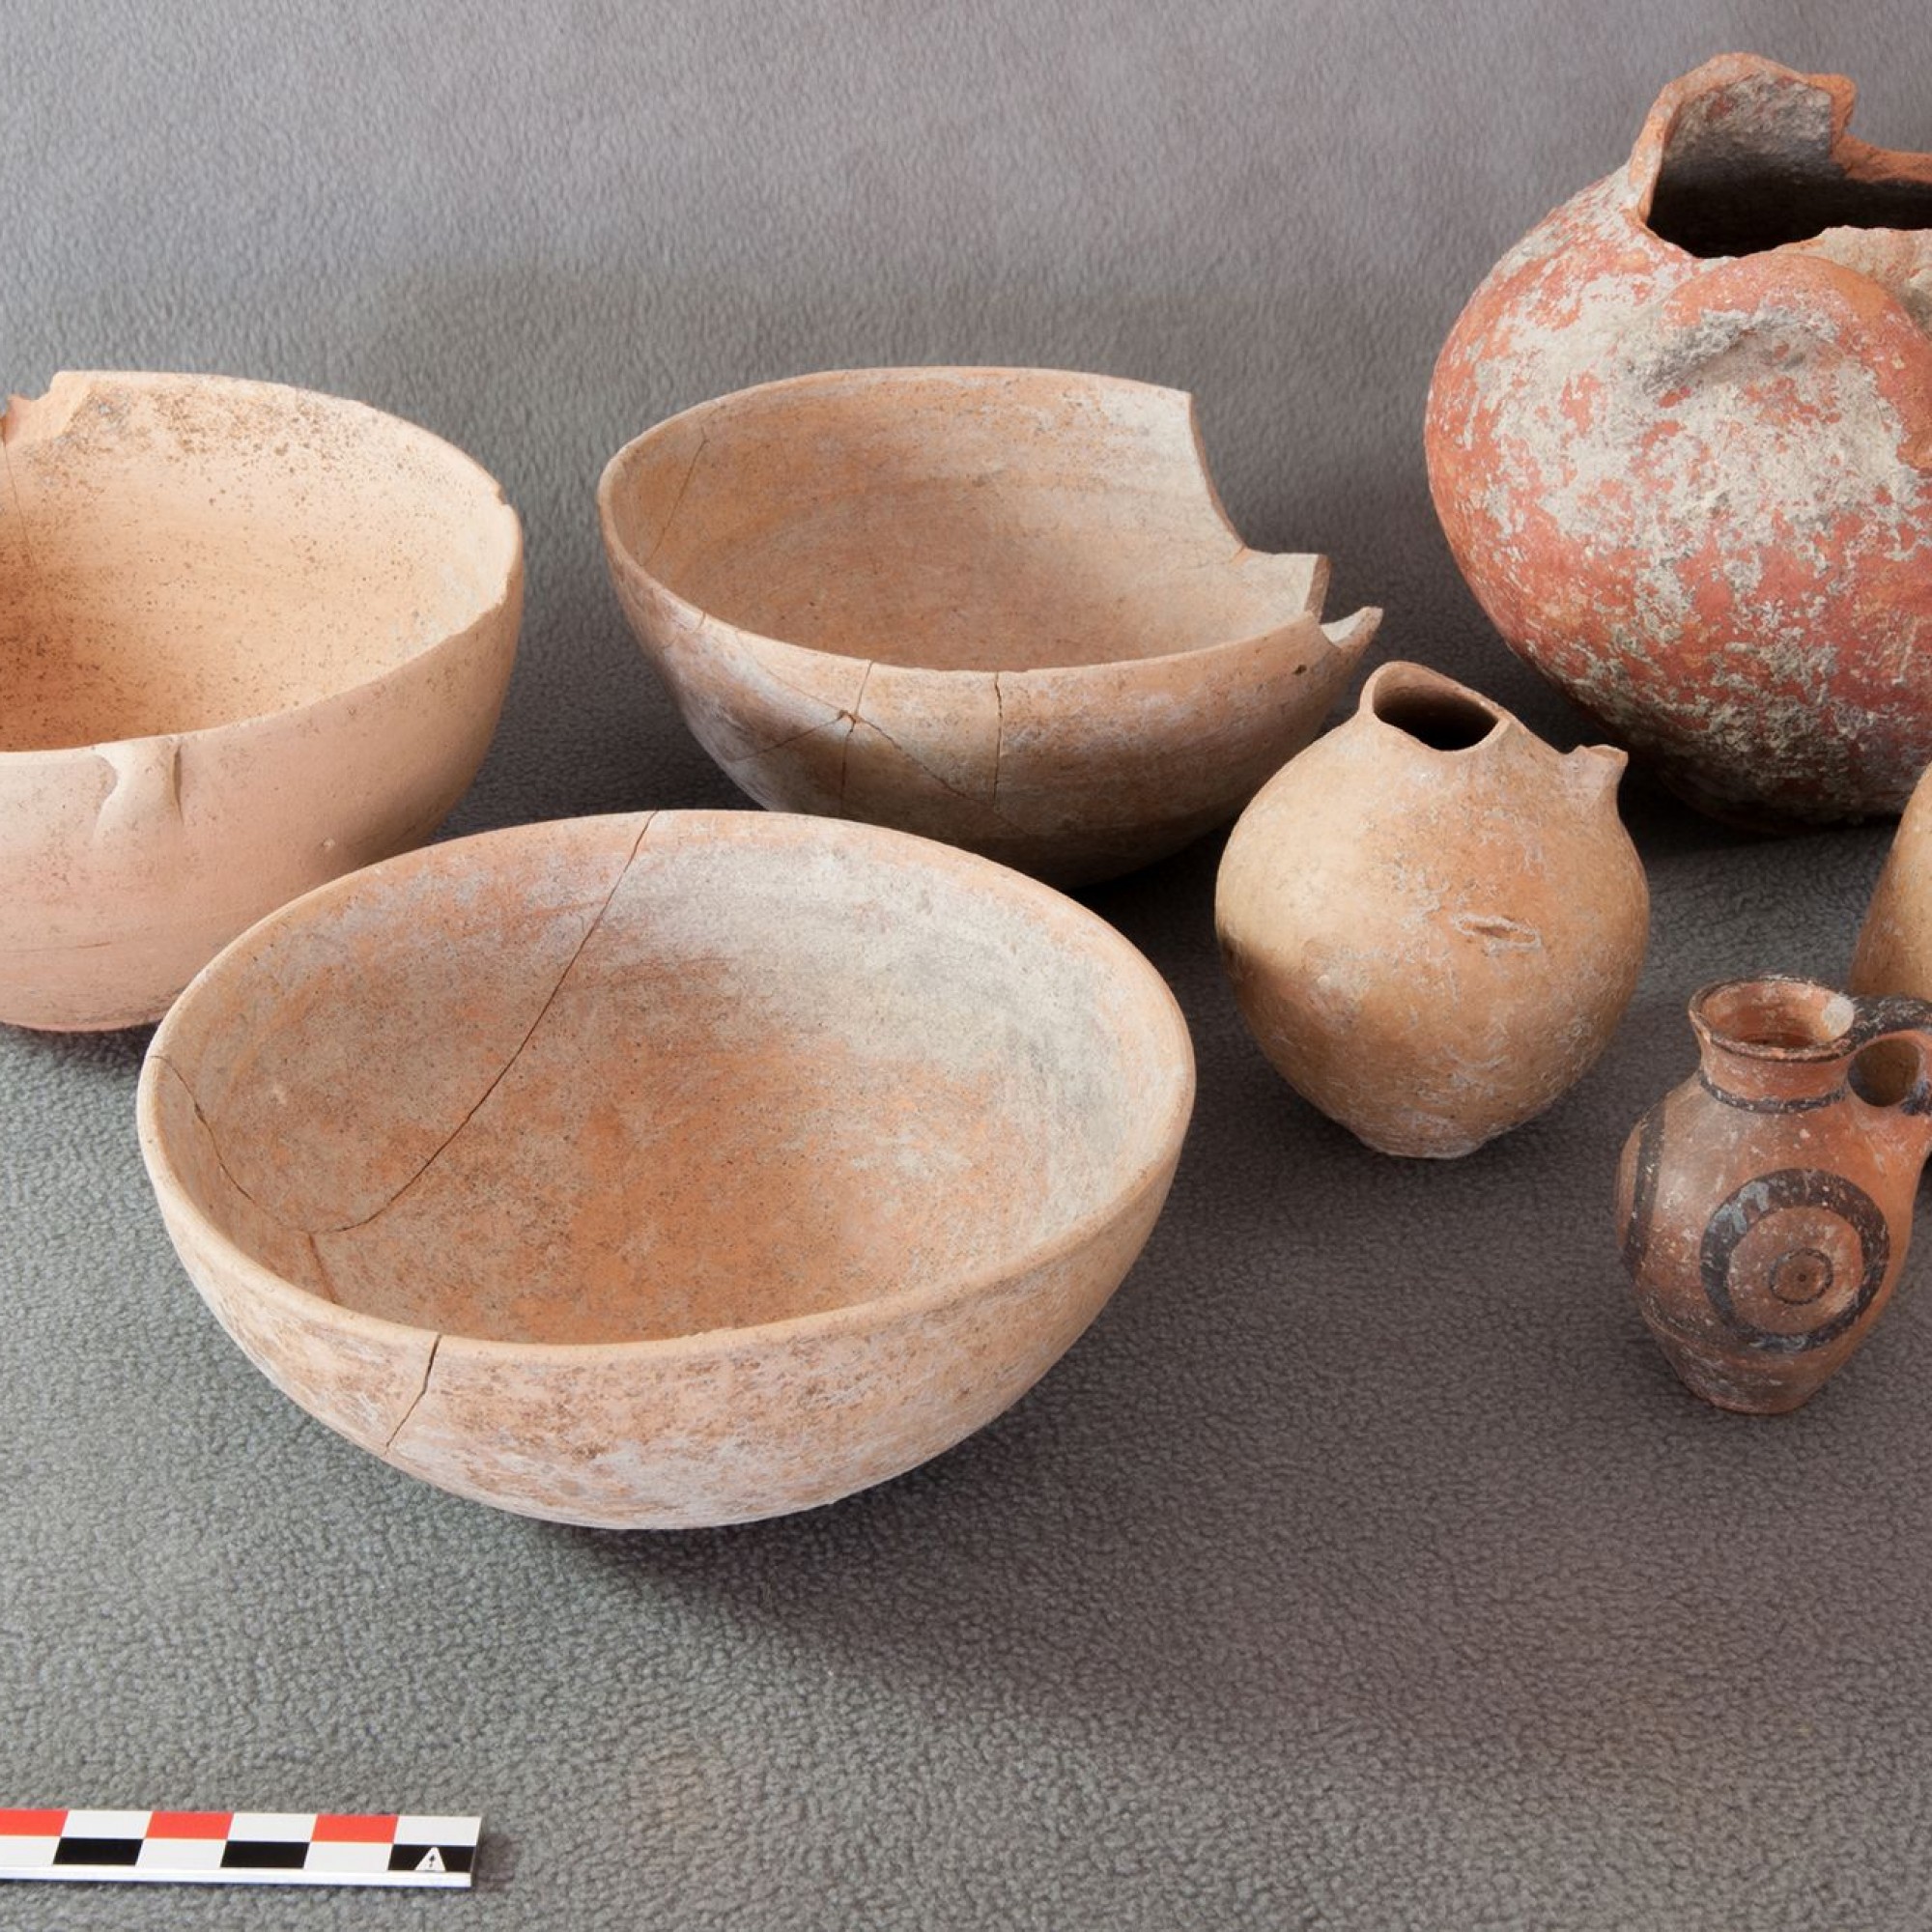 Keramikgefässe, die um drei Schafskelette gruppiert niedergelegt waren. © Institut für Archäologische Wissenschaften der Universität Bern, Projekt Sirkeli Höyük